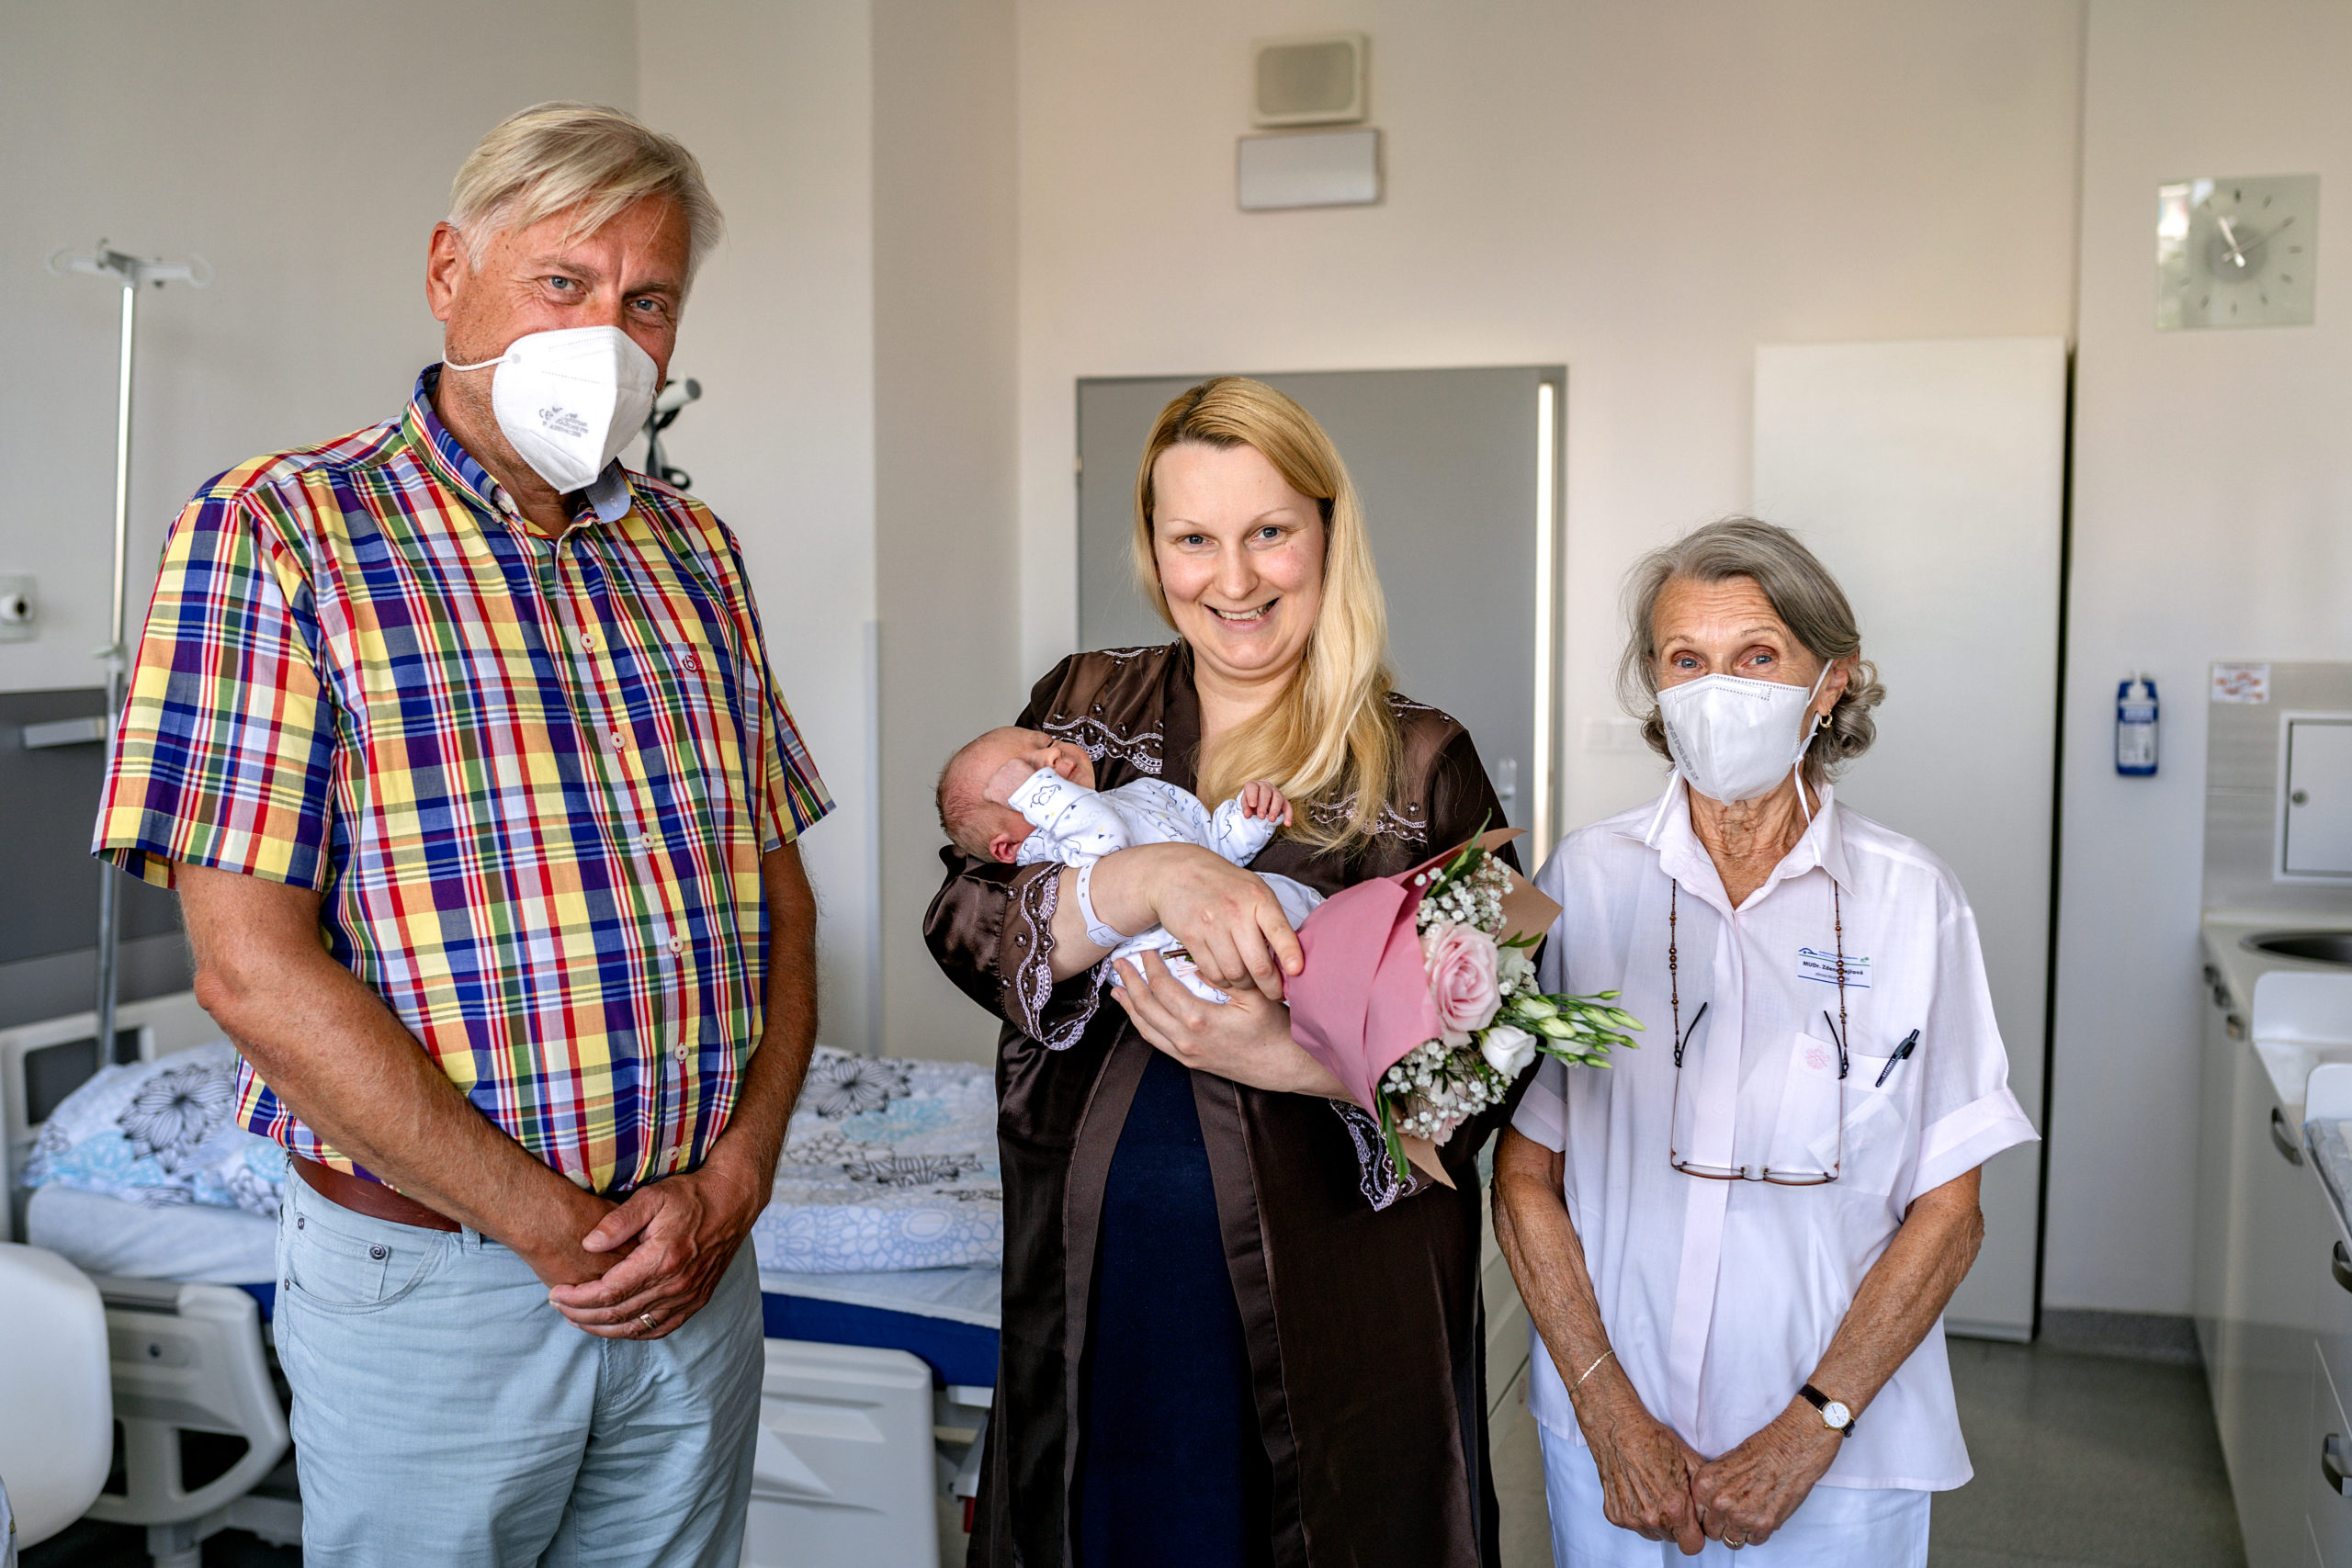 Nemocnice Roudnice nad Labem - aktuality - V roudnické porodnici se narodilo 500. miminko!